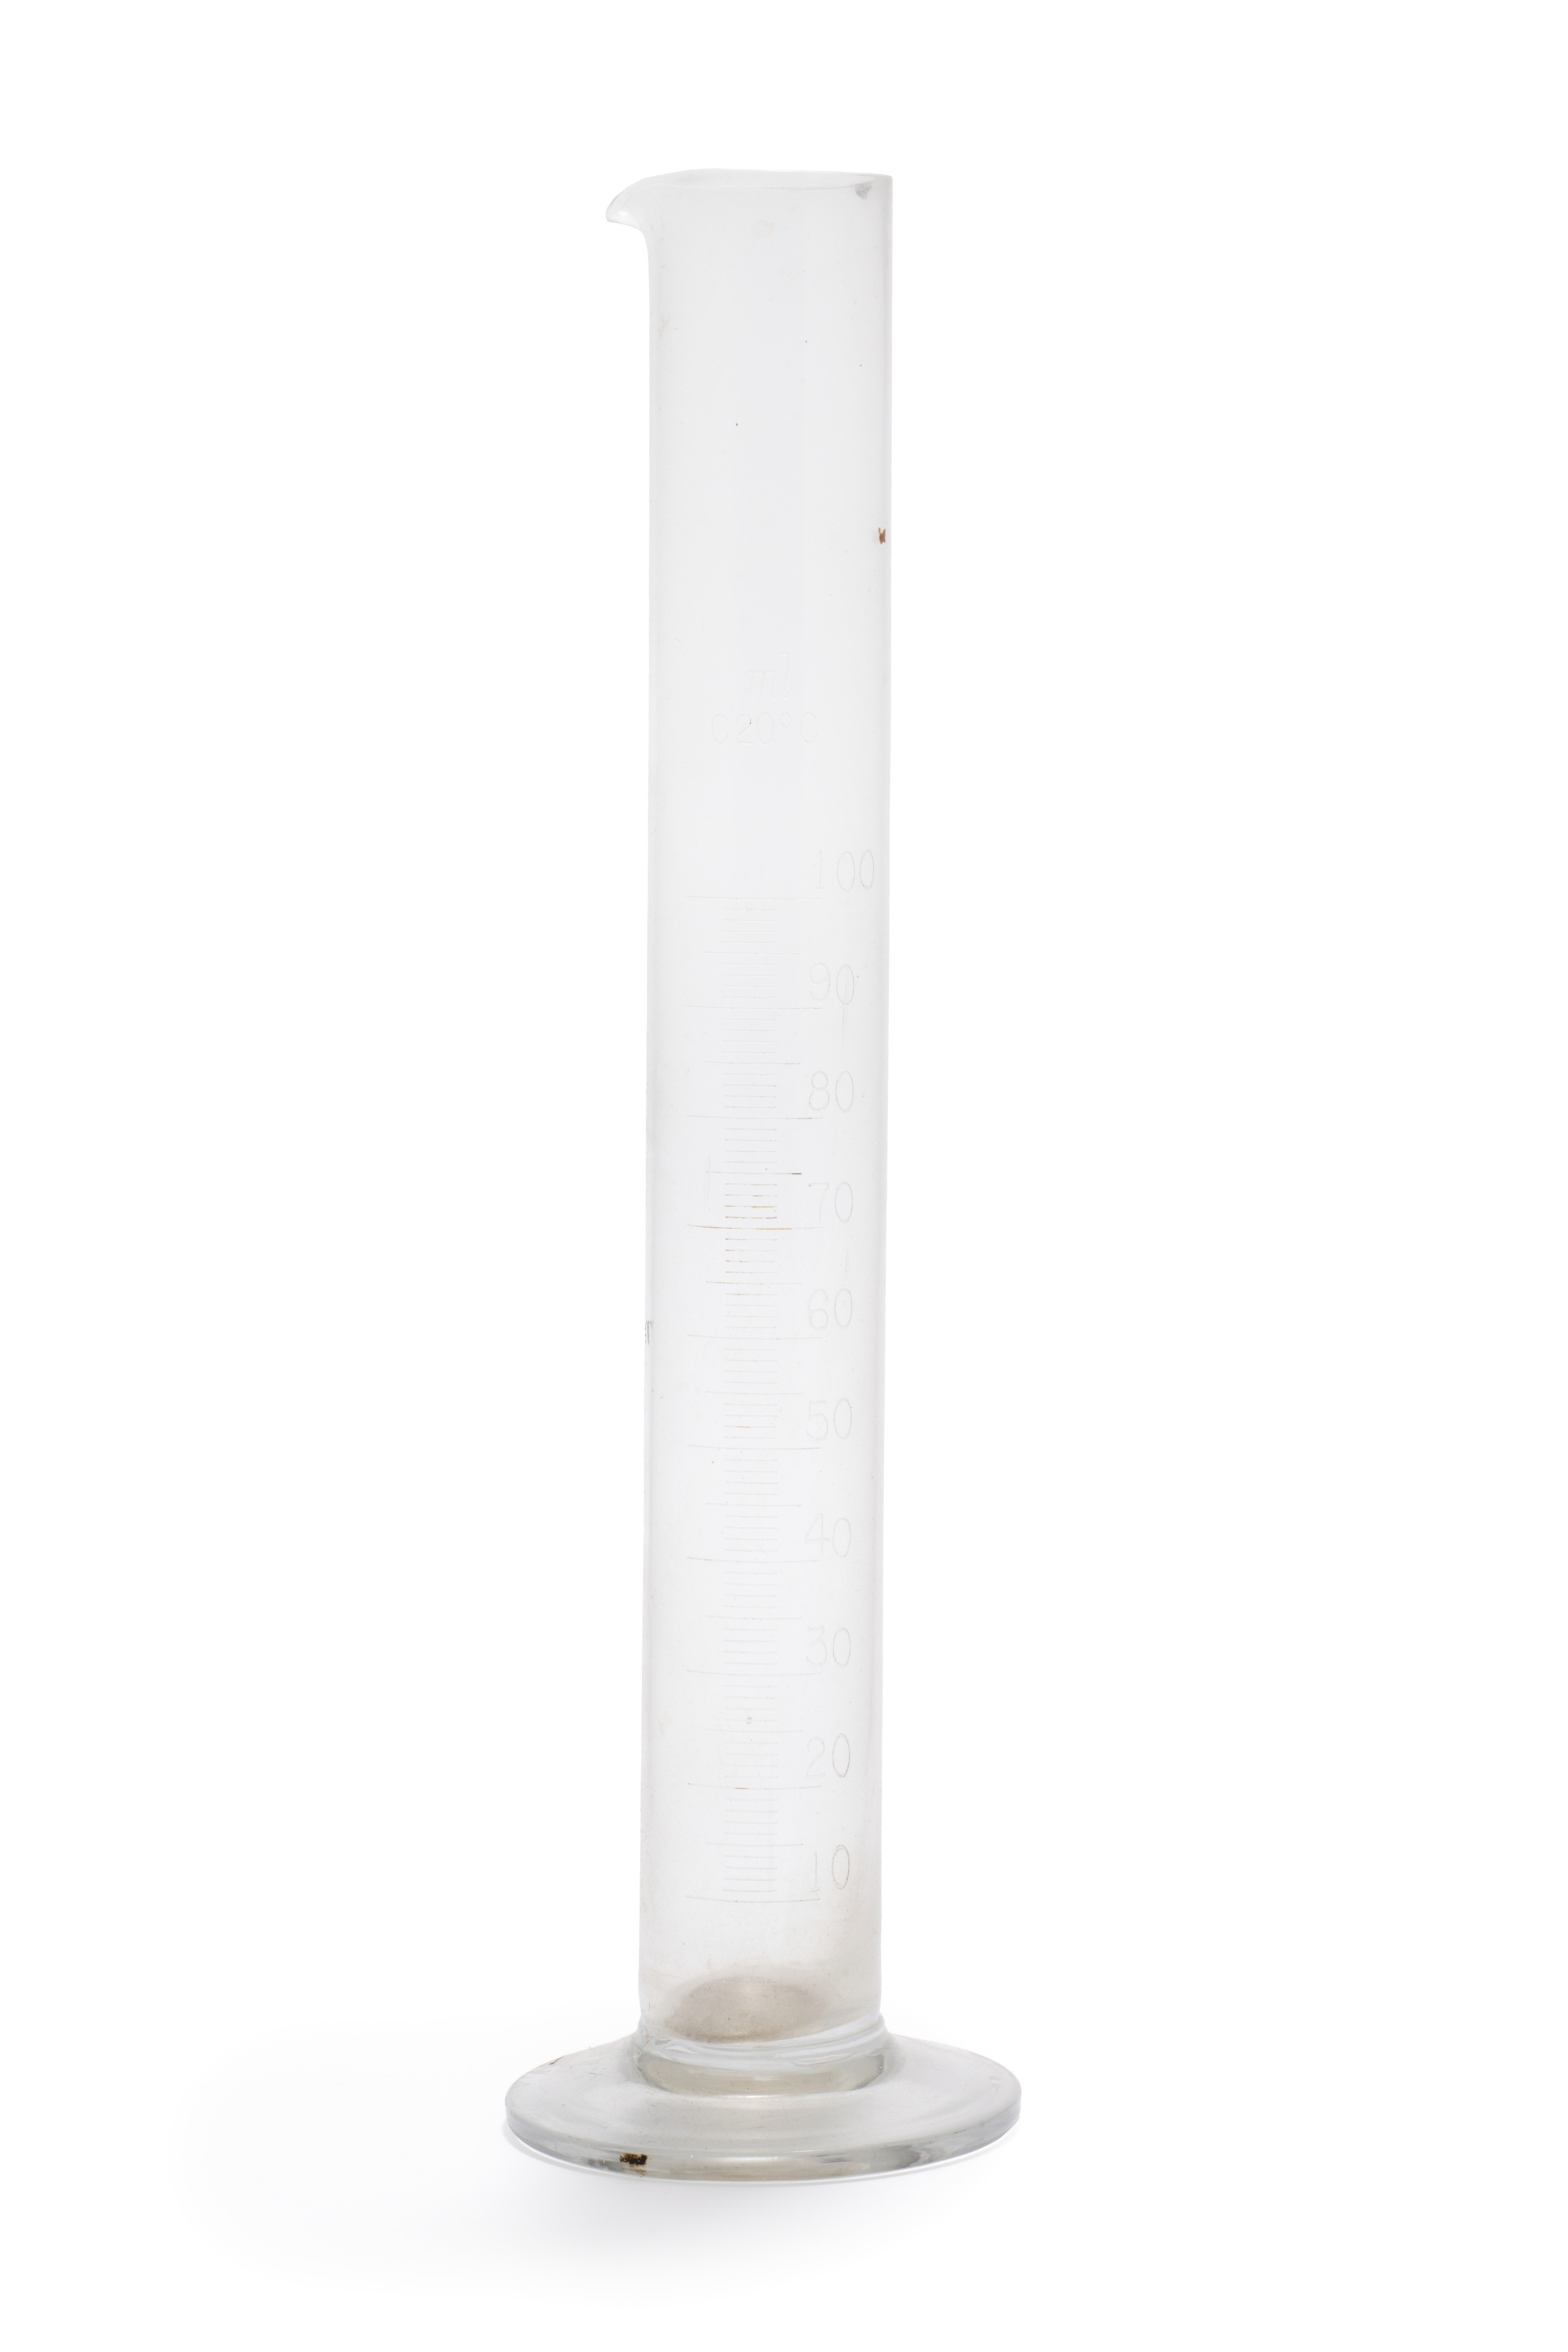 Cylinder used at Sydney Observatory